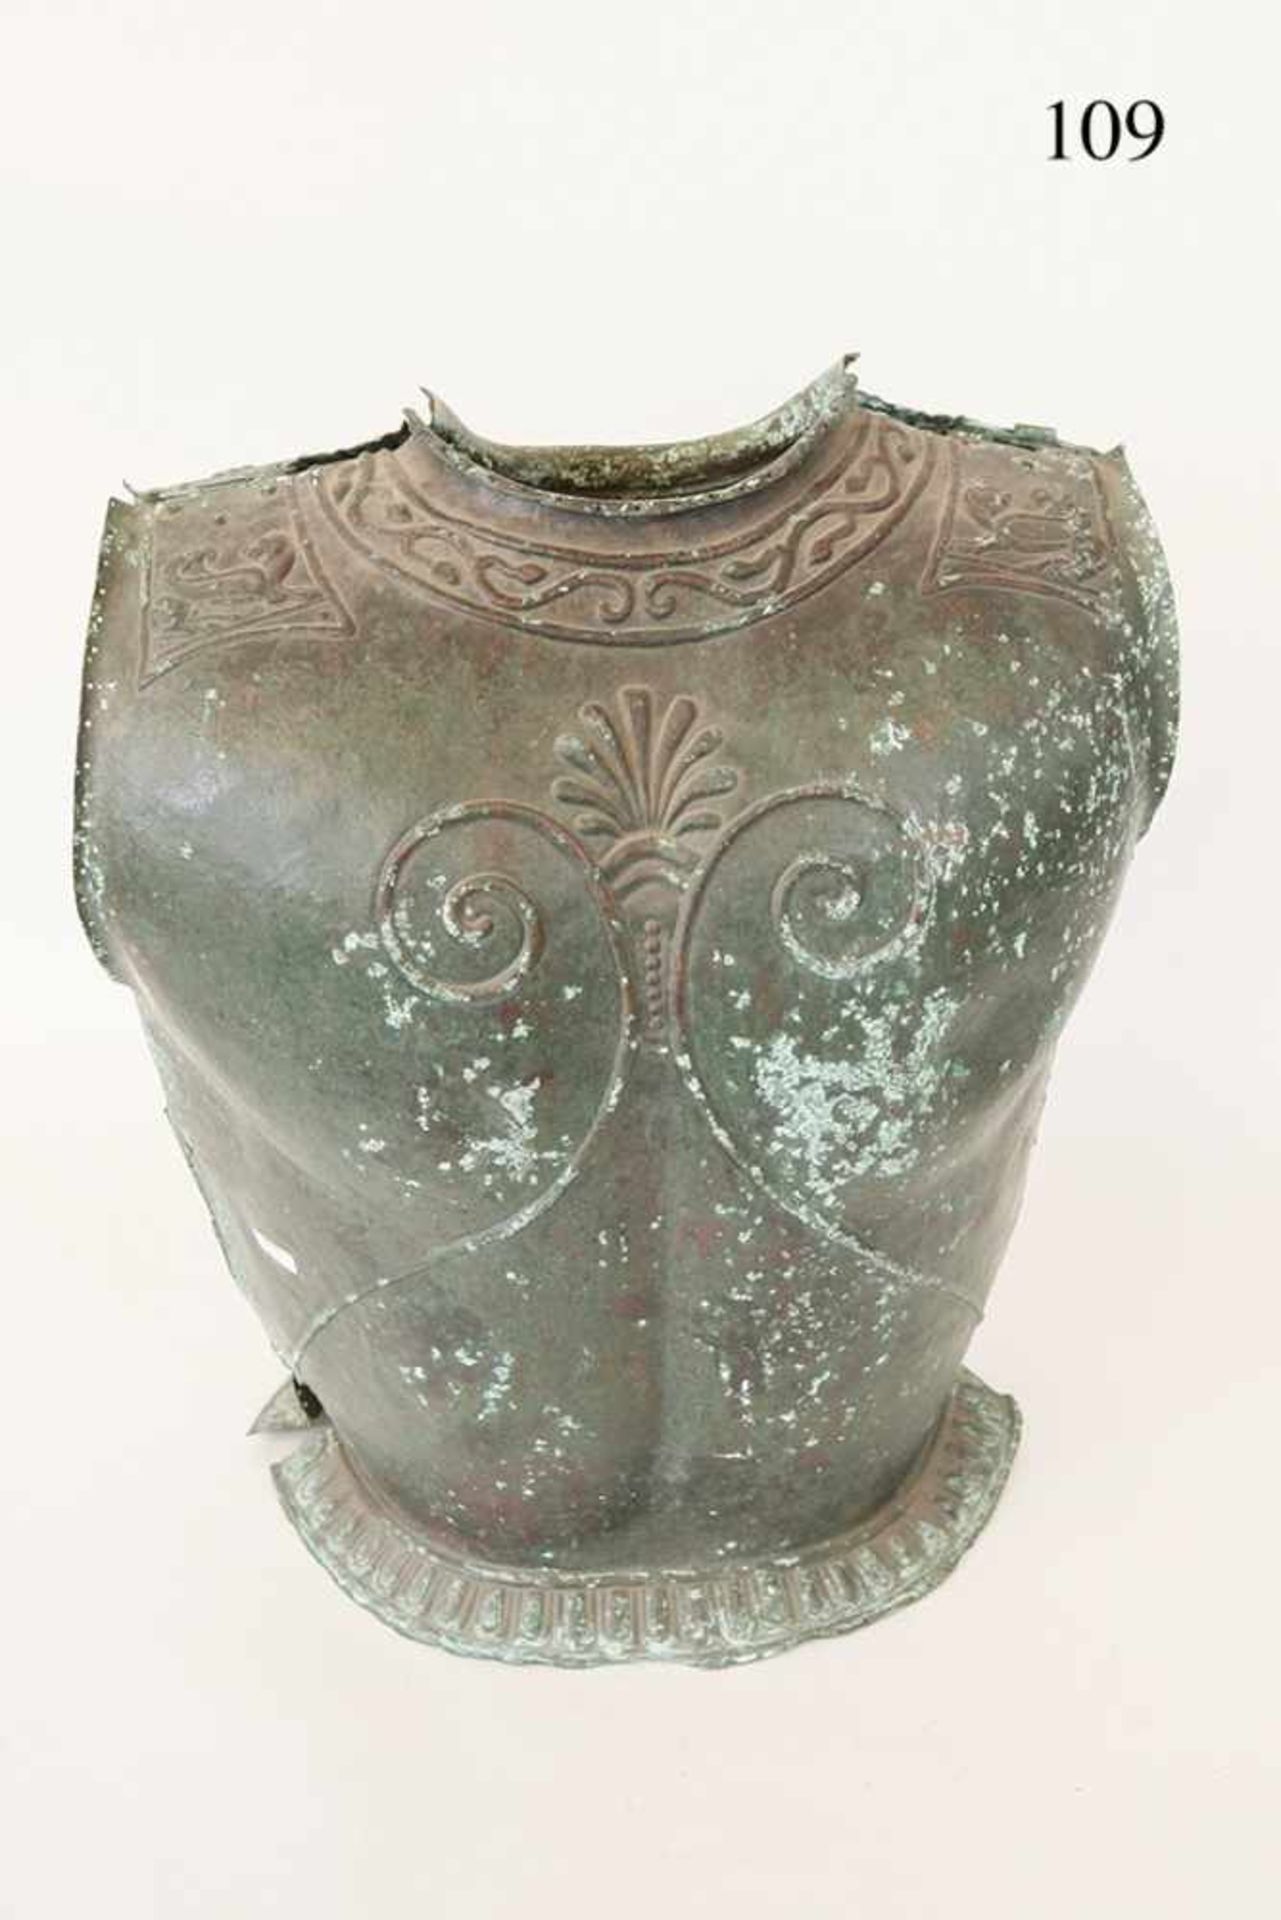 Bronzekürass, etruskisch, ca. 500 v.Chr. Bronze, getrieben. Brust und Rücken. Anatomisch geformt. - Bild 4 aus 4